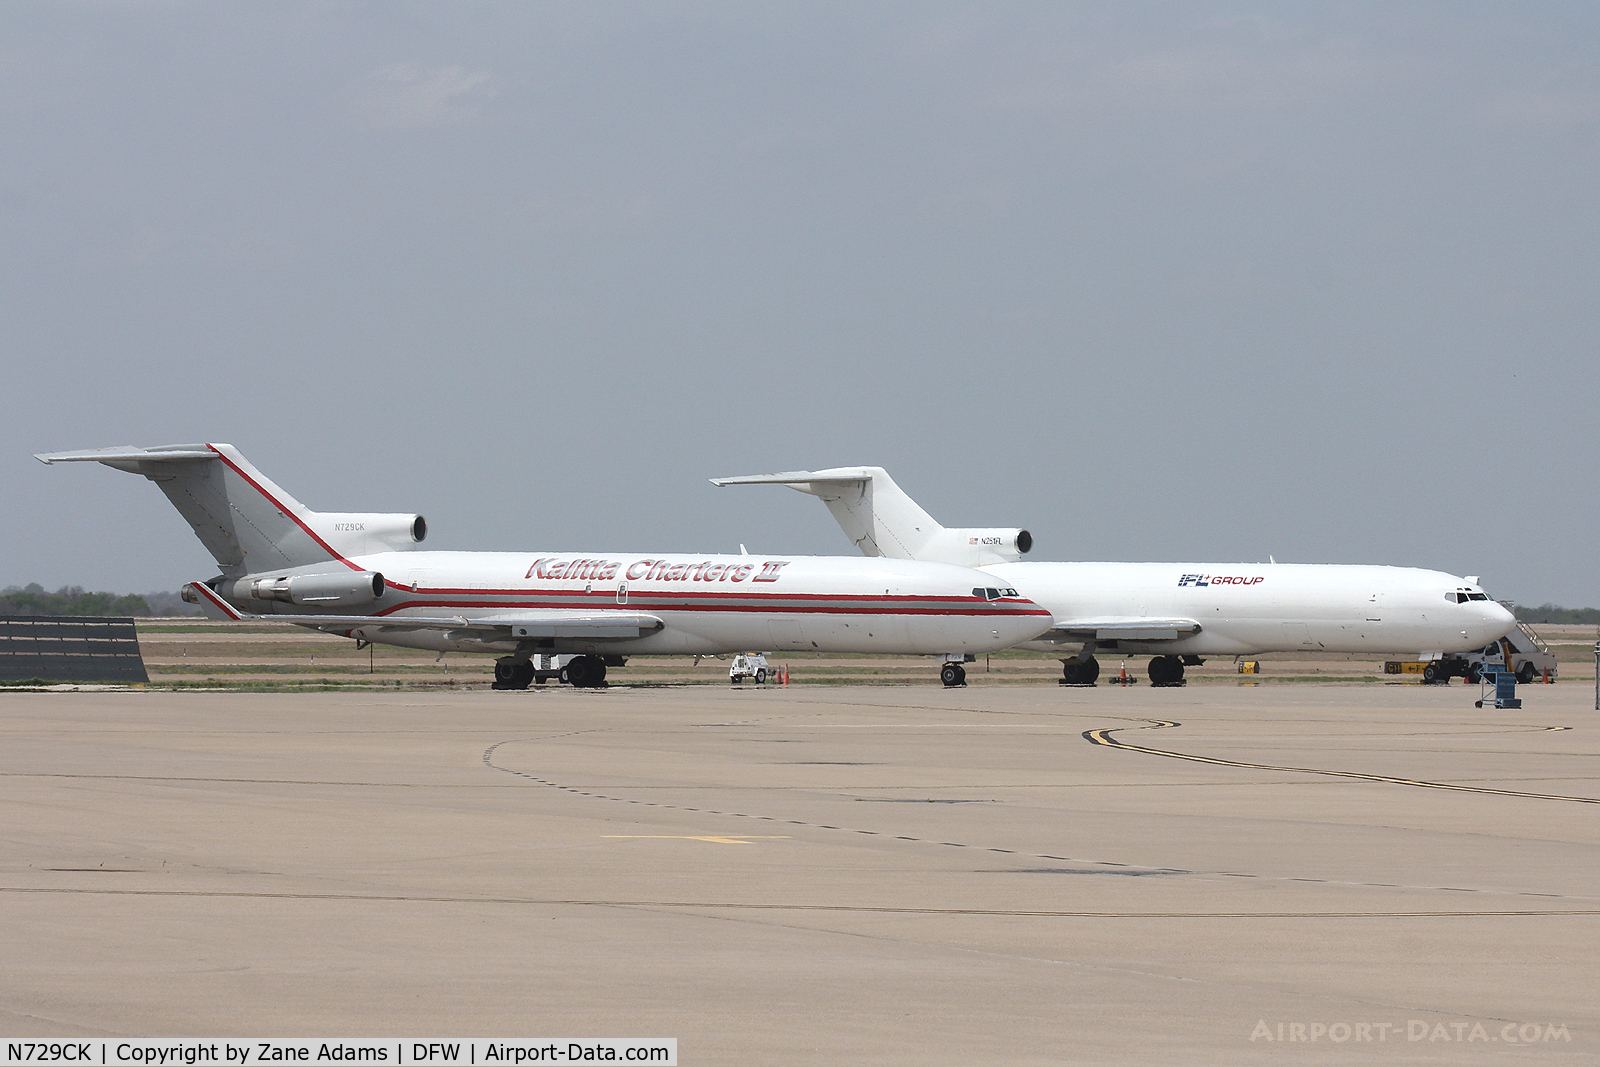 N729CK, 1982 Boeing 727-264 C/N 22982, At DFW Airport